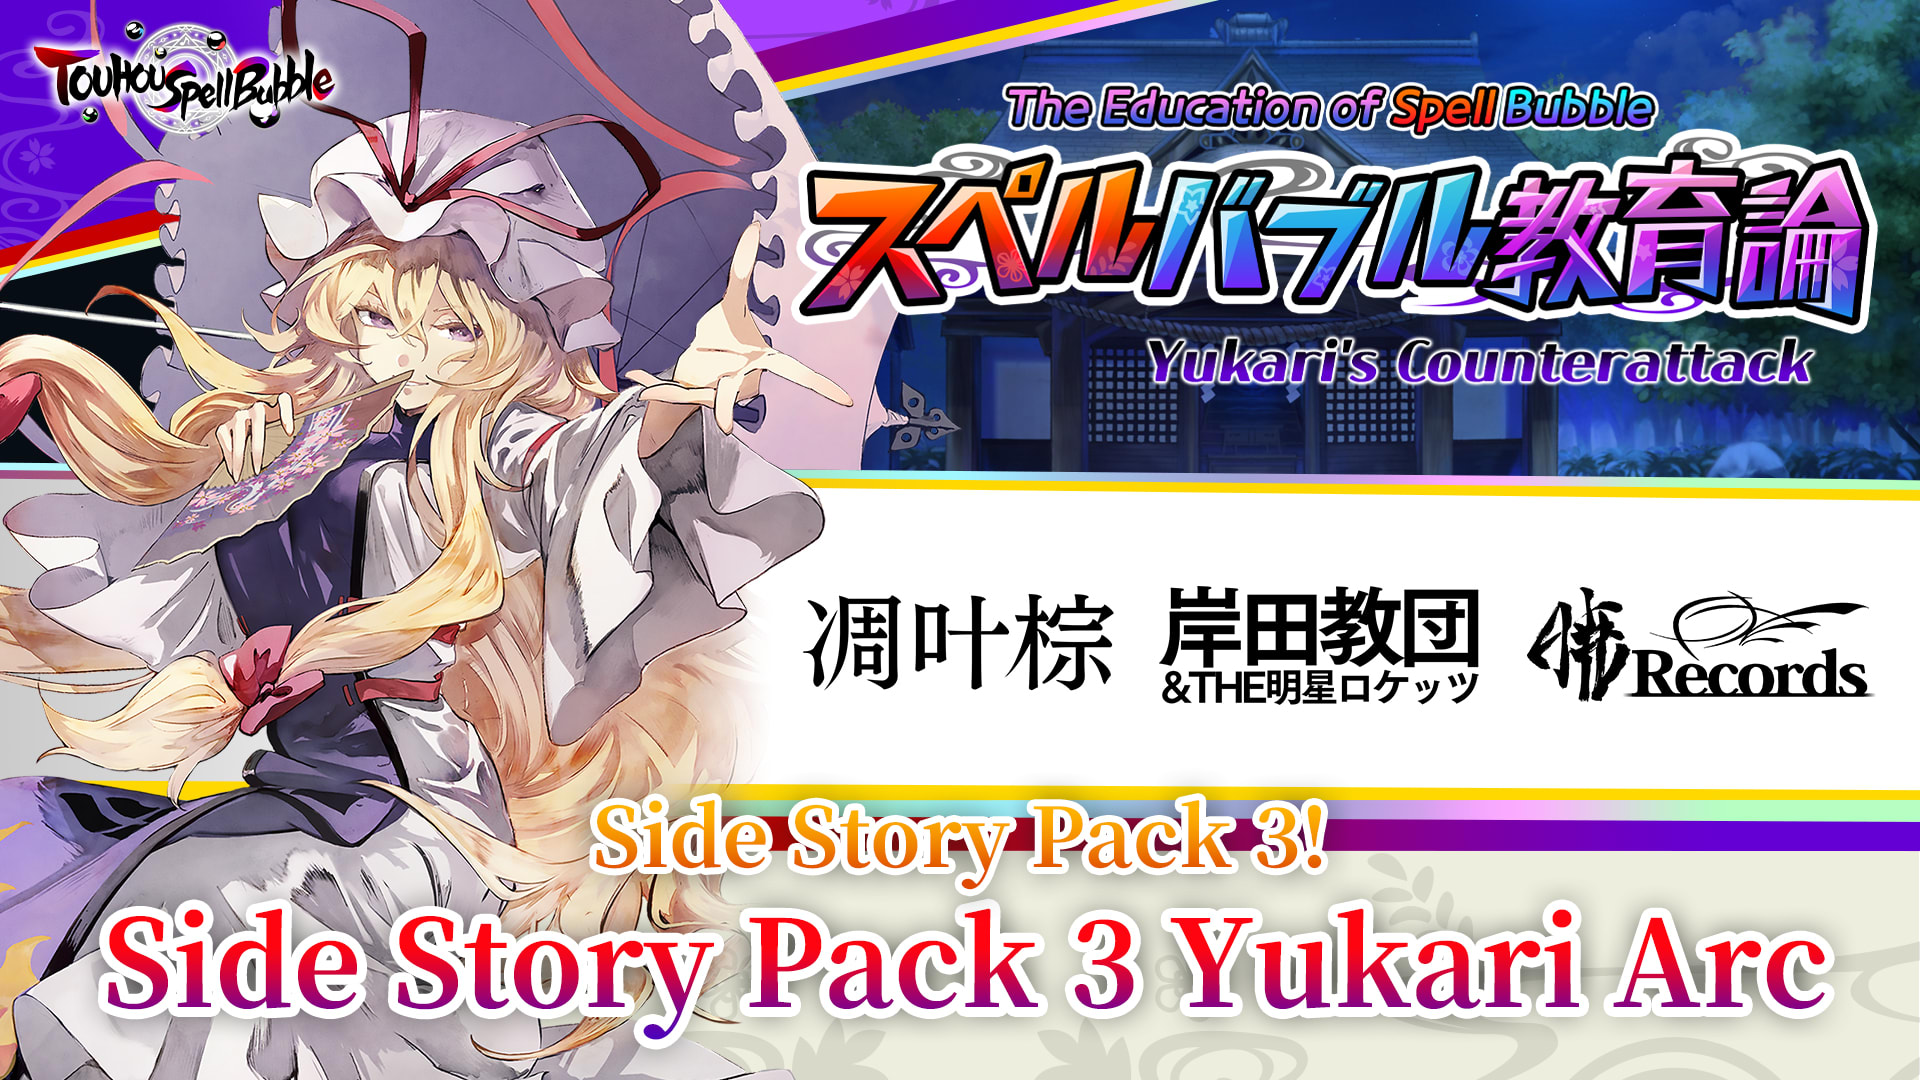 Side Story Pack Yukari Arc